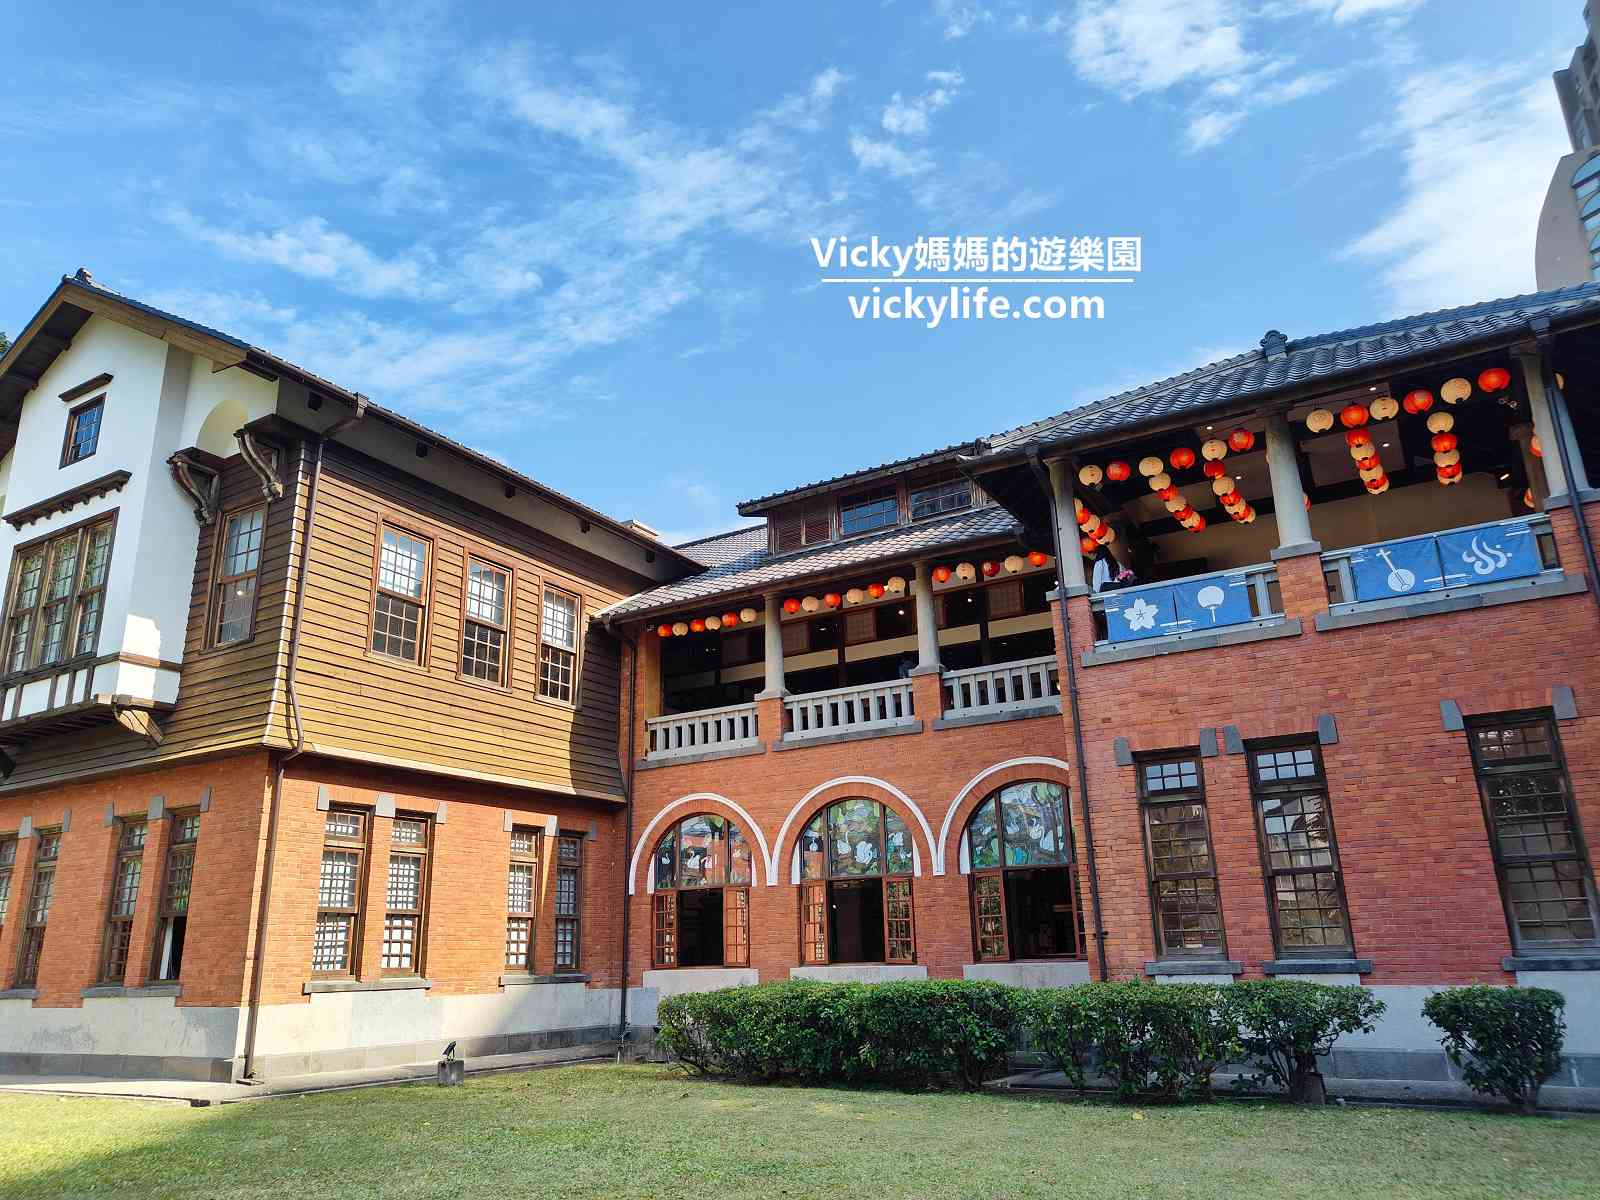 台北景點︱北投溫泉博物館：免門票即可享受和洋建築帶來的視覺美感，望樓、大浴池、榻榻米活動大廳一定要逛起來